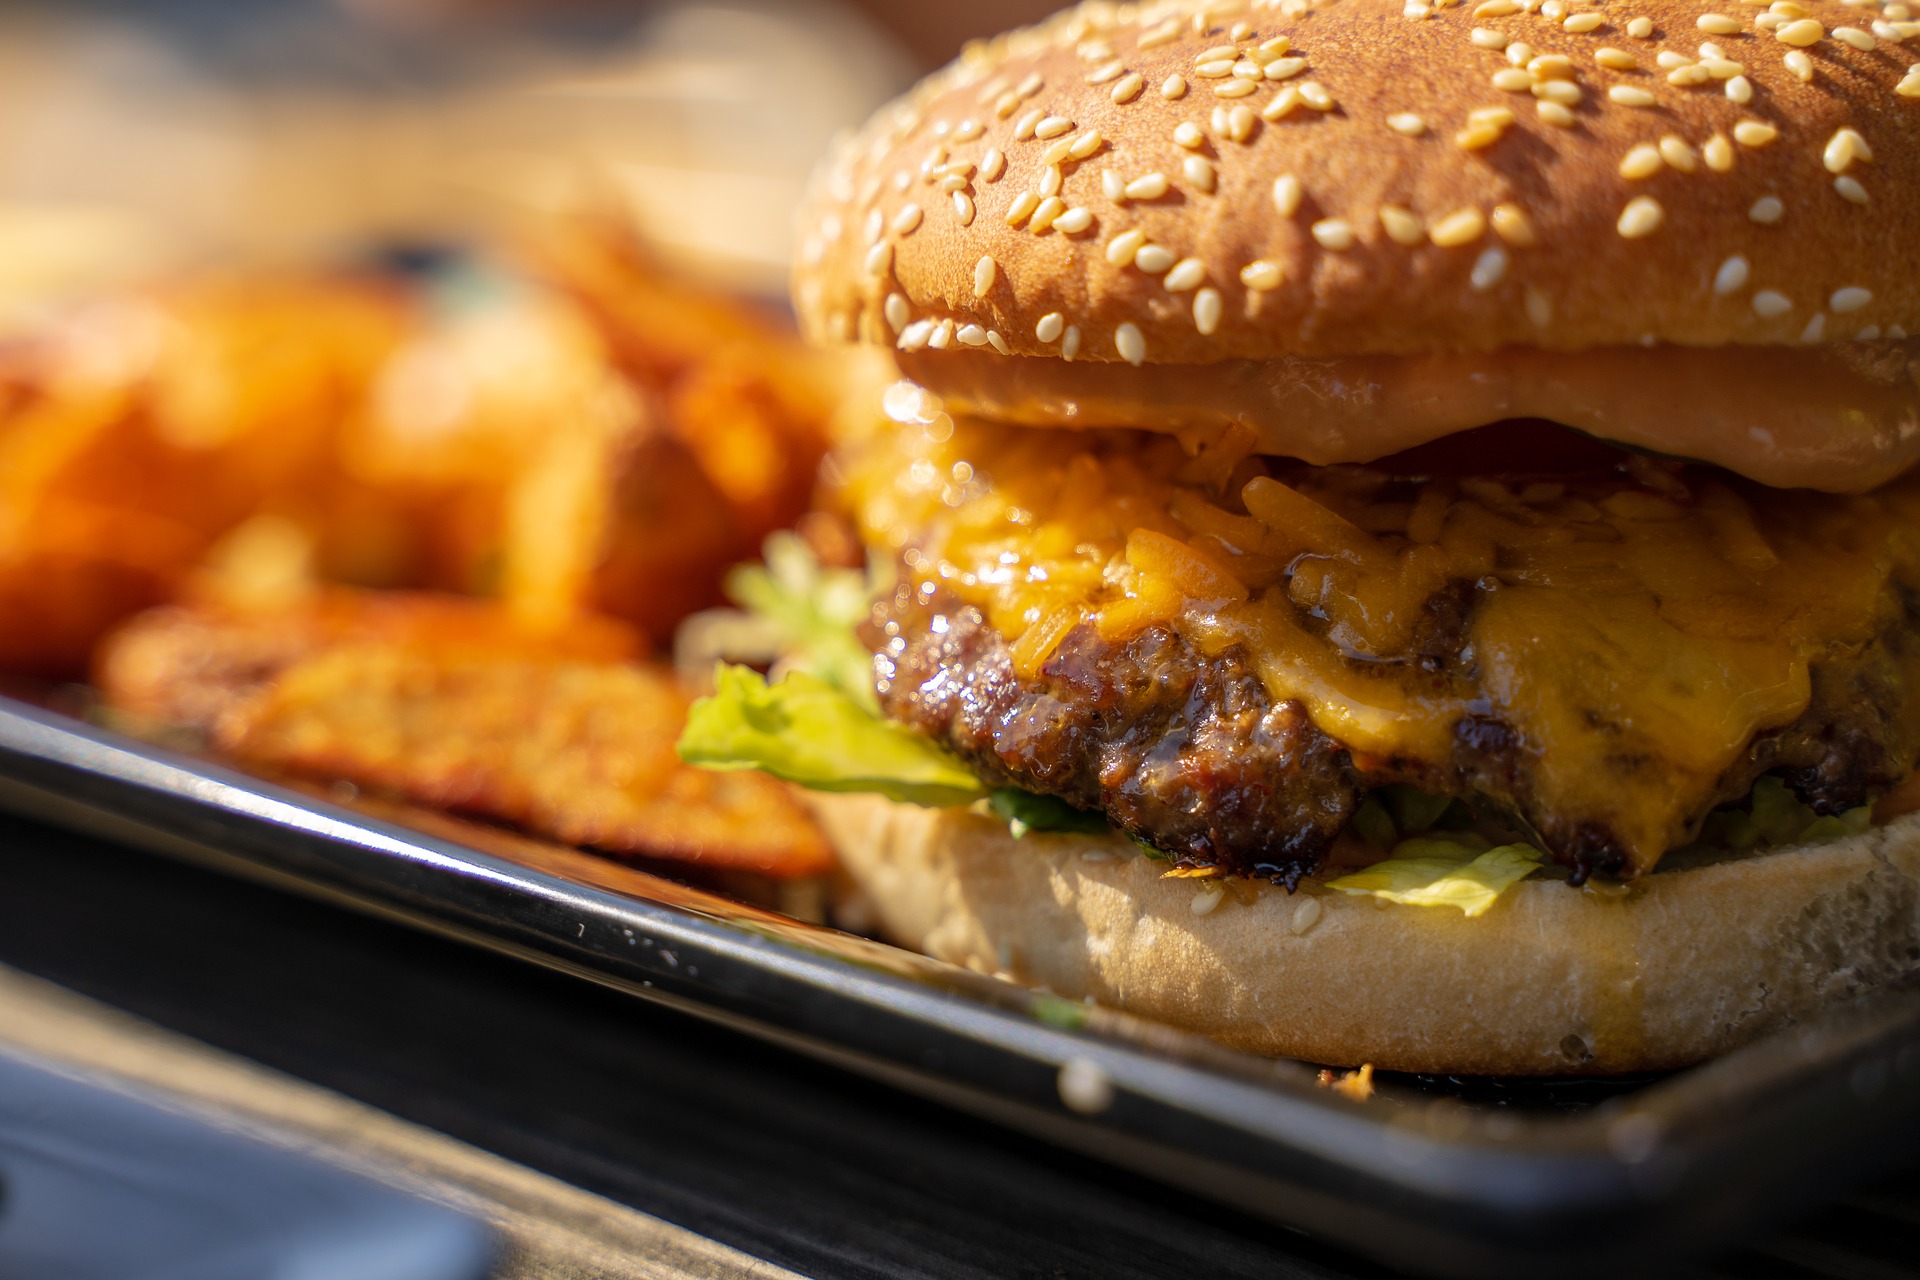 Hamburger Sunumlarınıza Retro Bir Hava Katmak İster Misiniz?